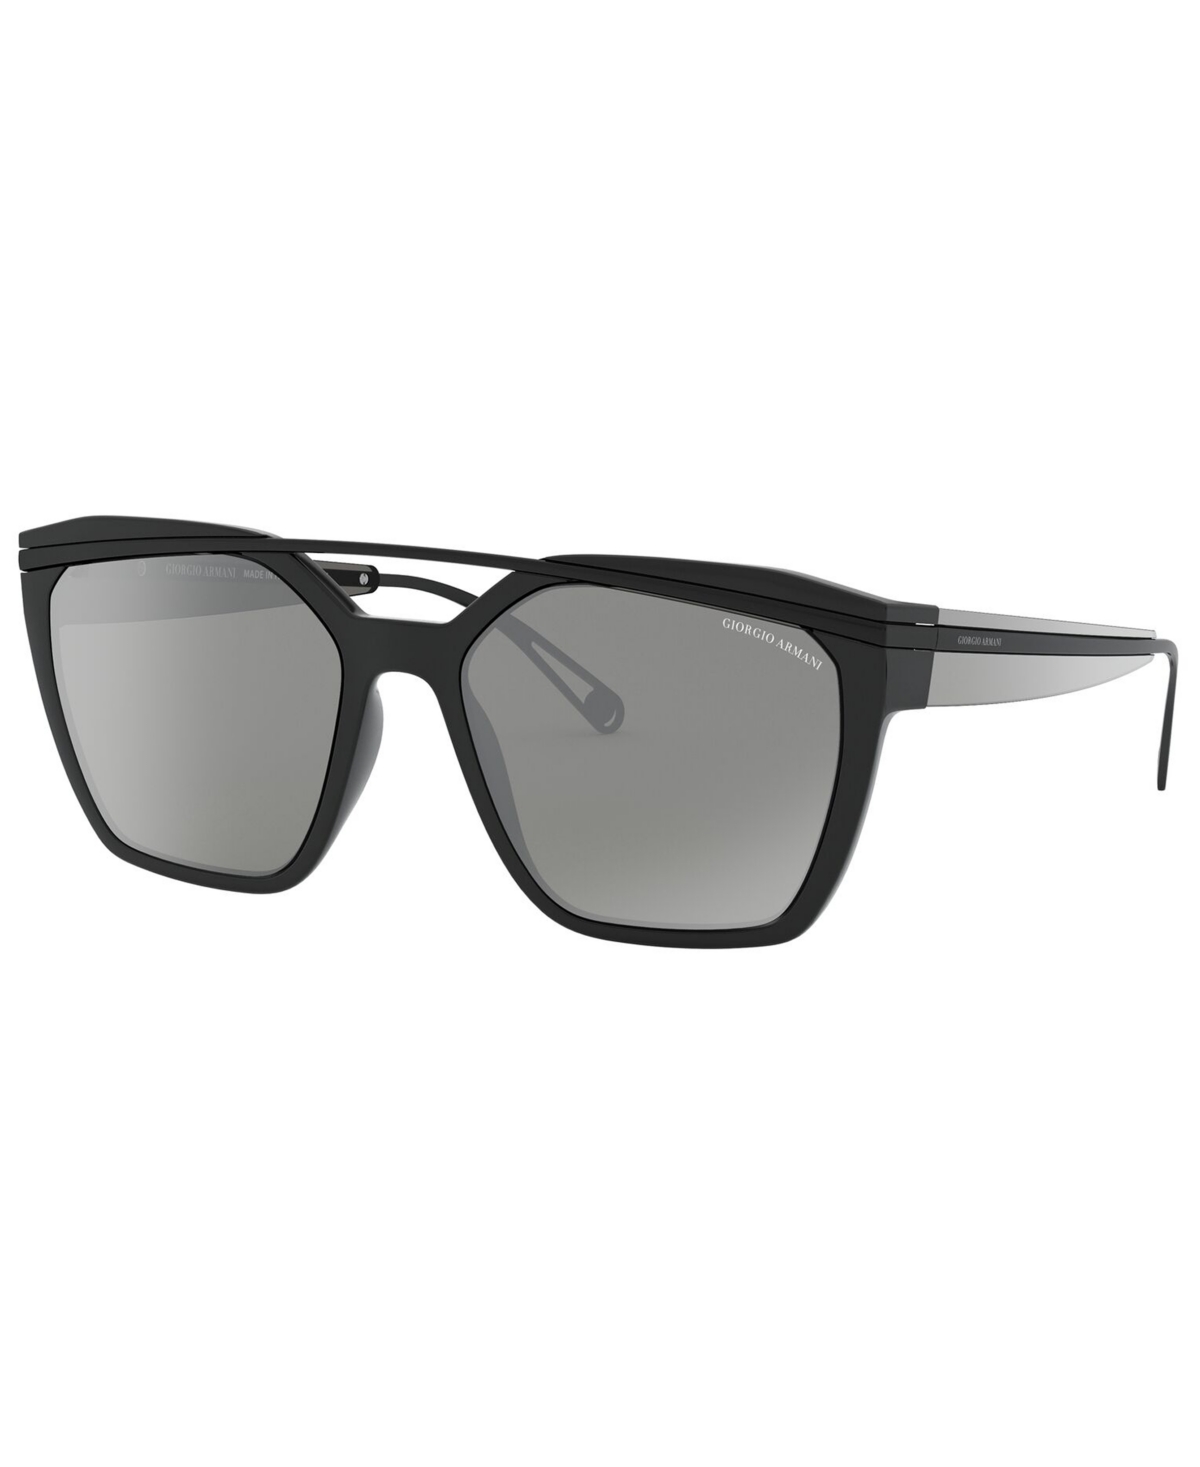 Giorgio Armani Women's Sunglasses, Ar8125 In Black,grey Mirror Silver